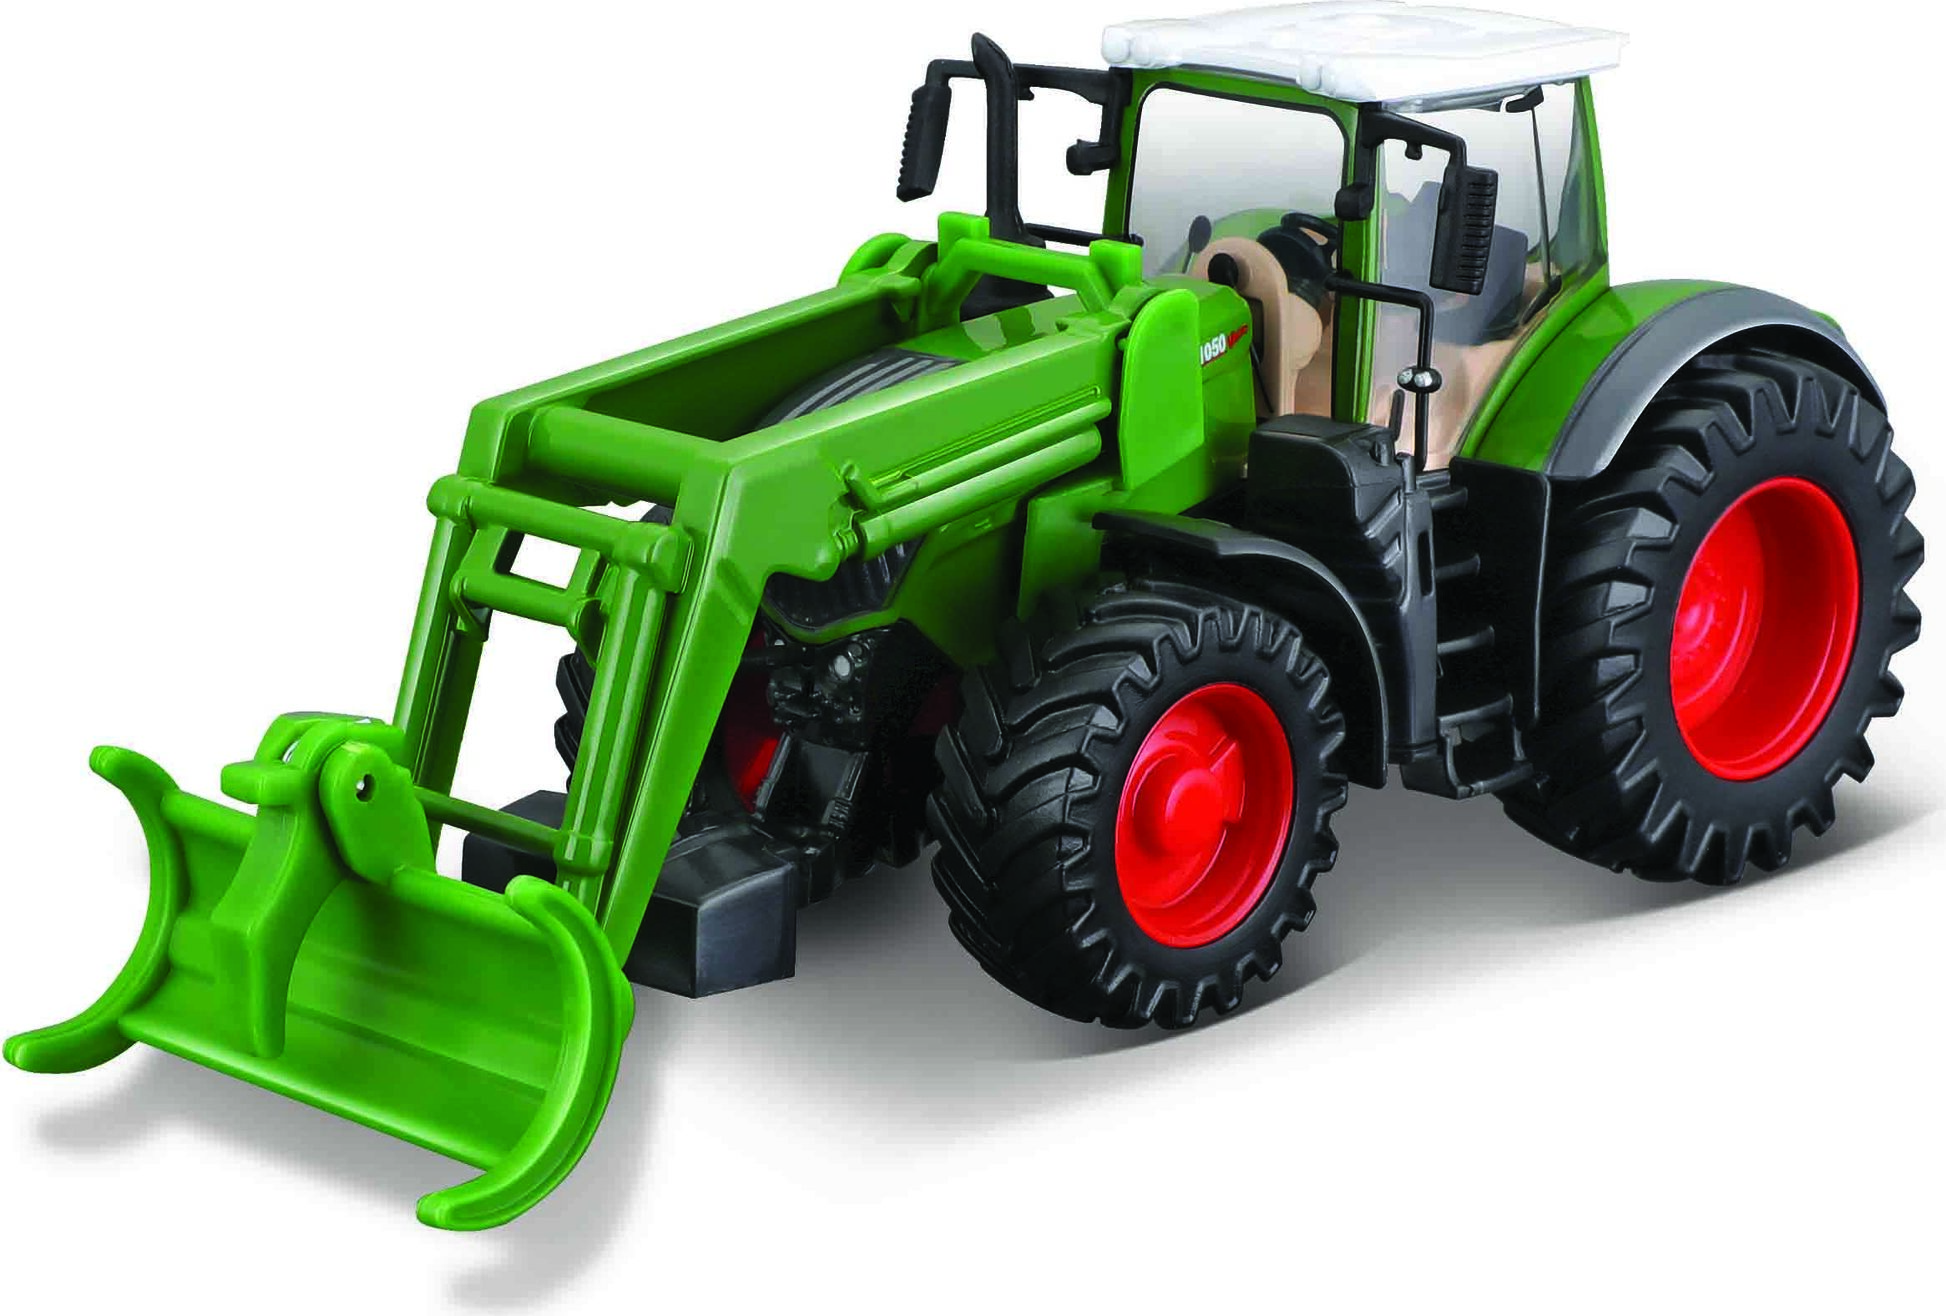 Bburago 10 cm Farm Tractor with front loader - Fendt 1050 Vario + logging Grab